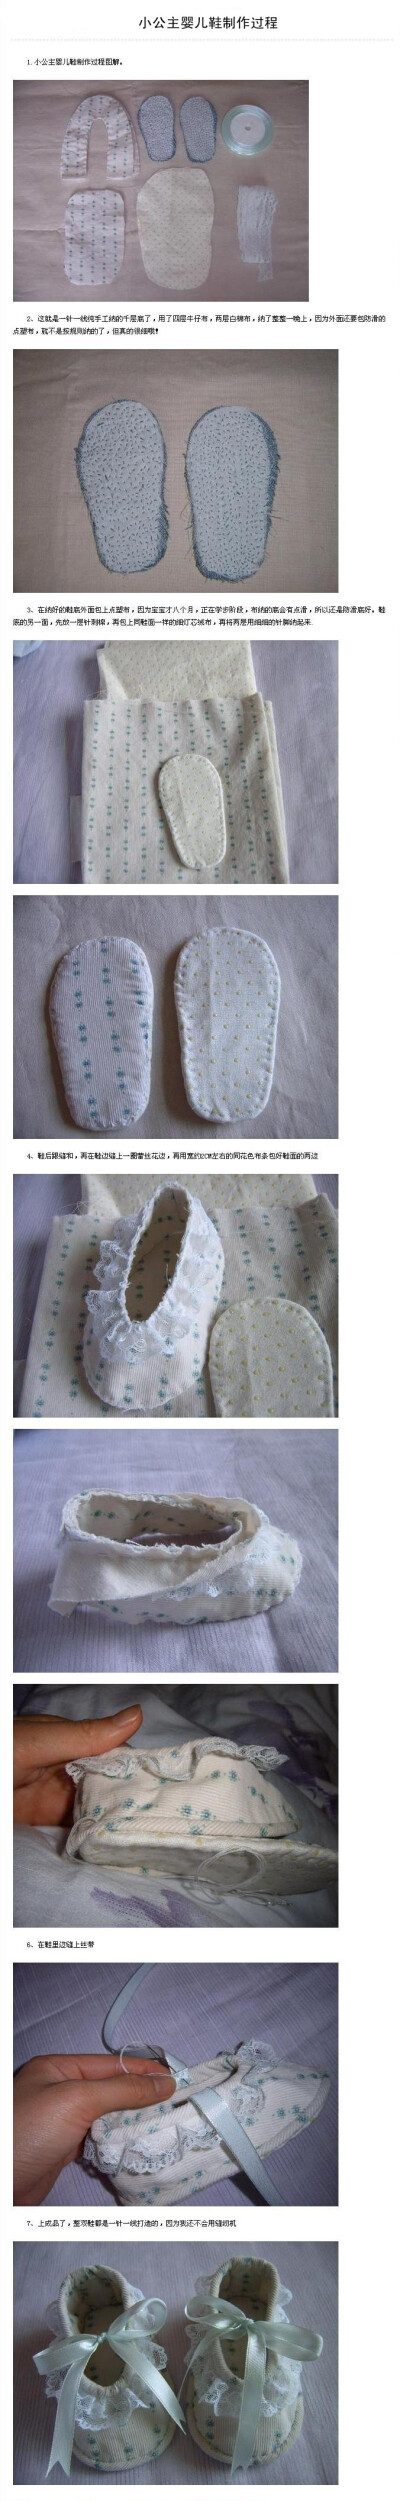 小公主婴儿鞋制作过程